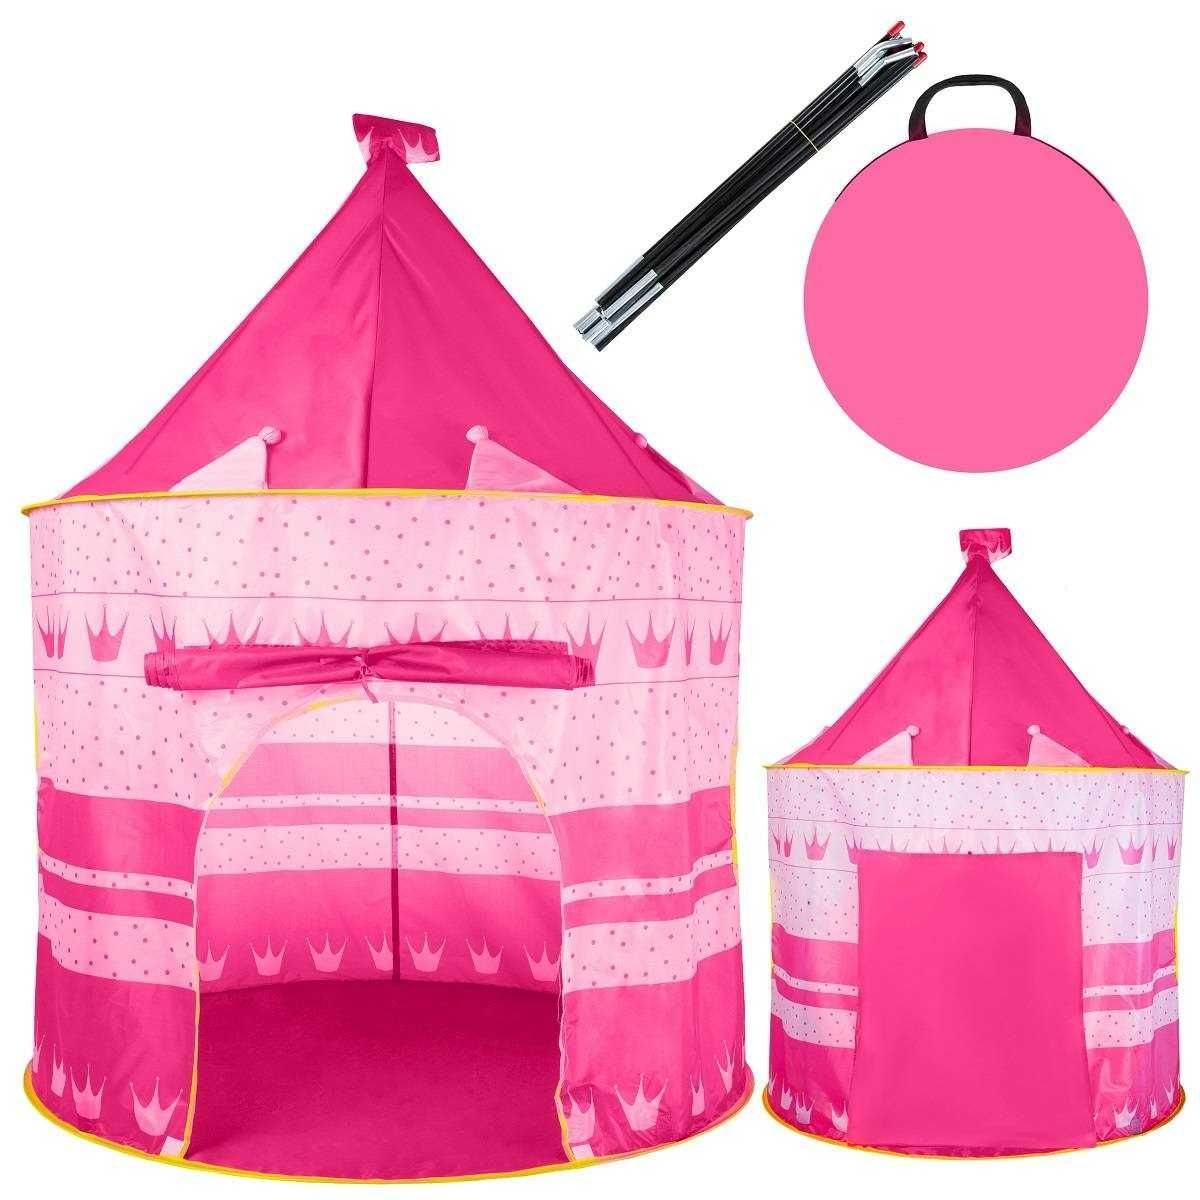 Детска палатка за игра + чанта за съхранение -135х105 см, Розова, Синя